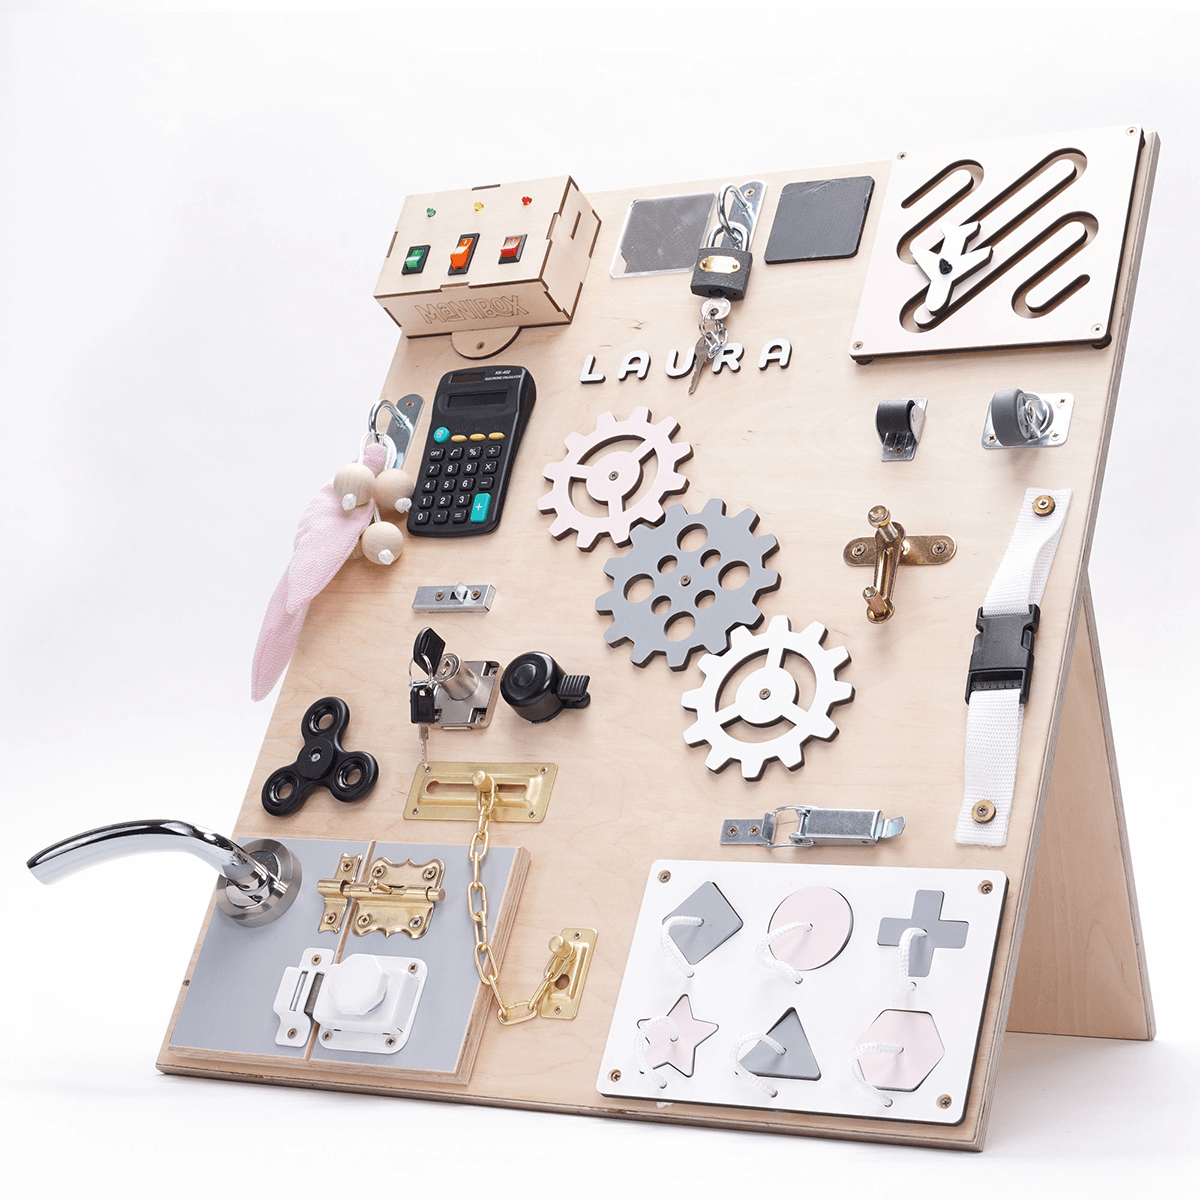 Dřevěné hračky Manibox Senzorická deska Activity board s diodami - velká růžová